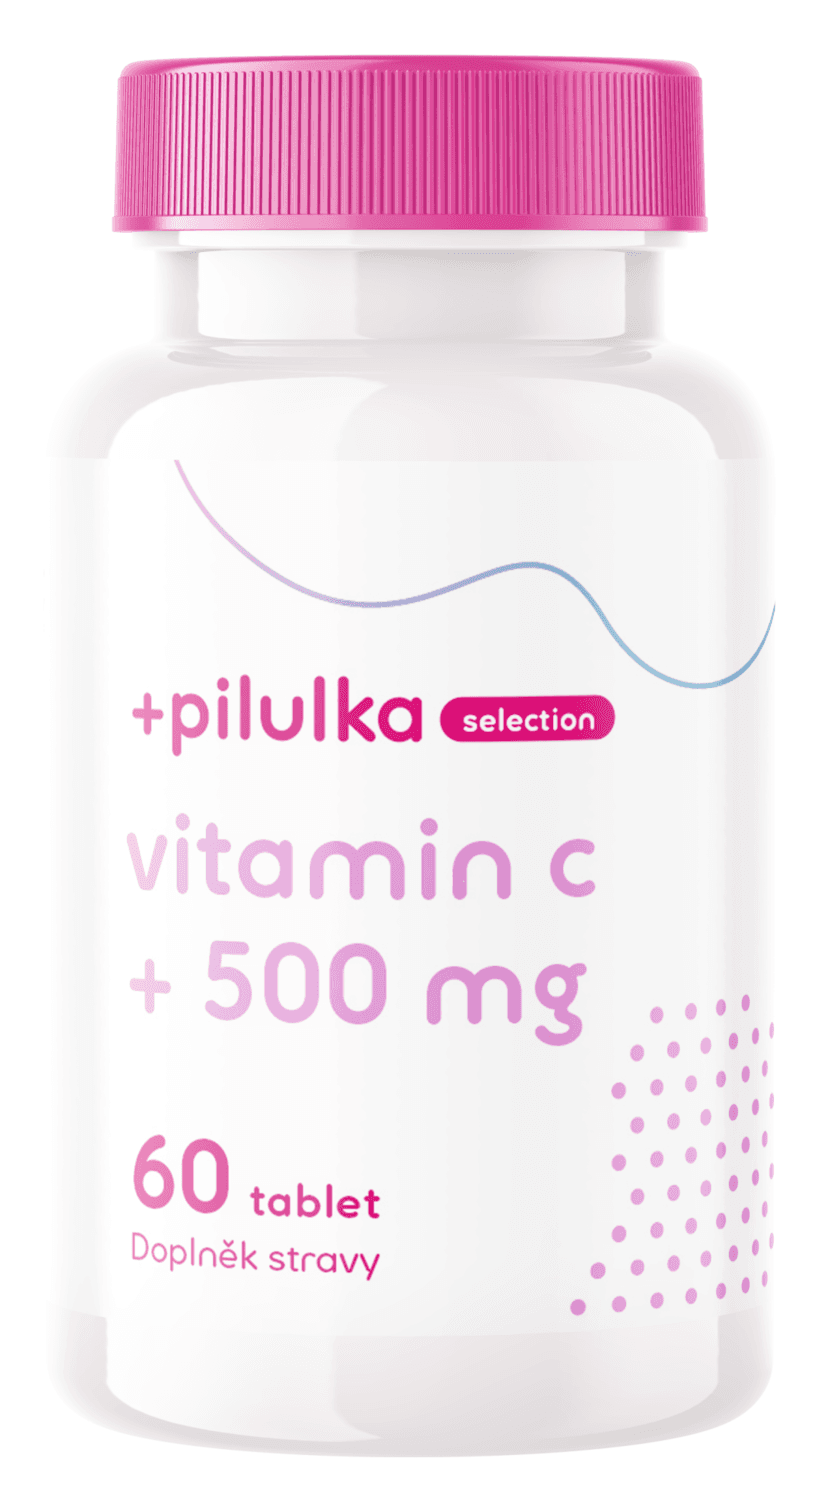 Pilulka Selection Vitamín C 500 mg